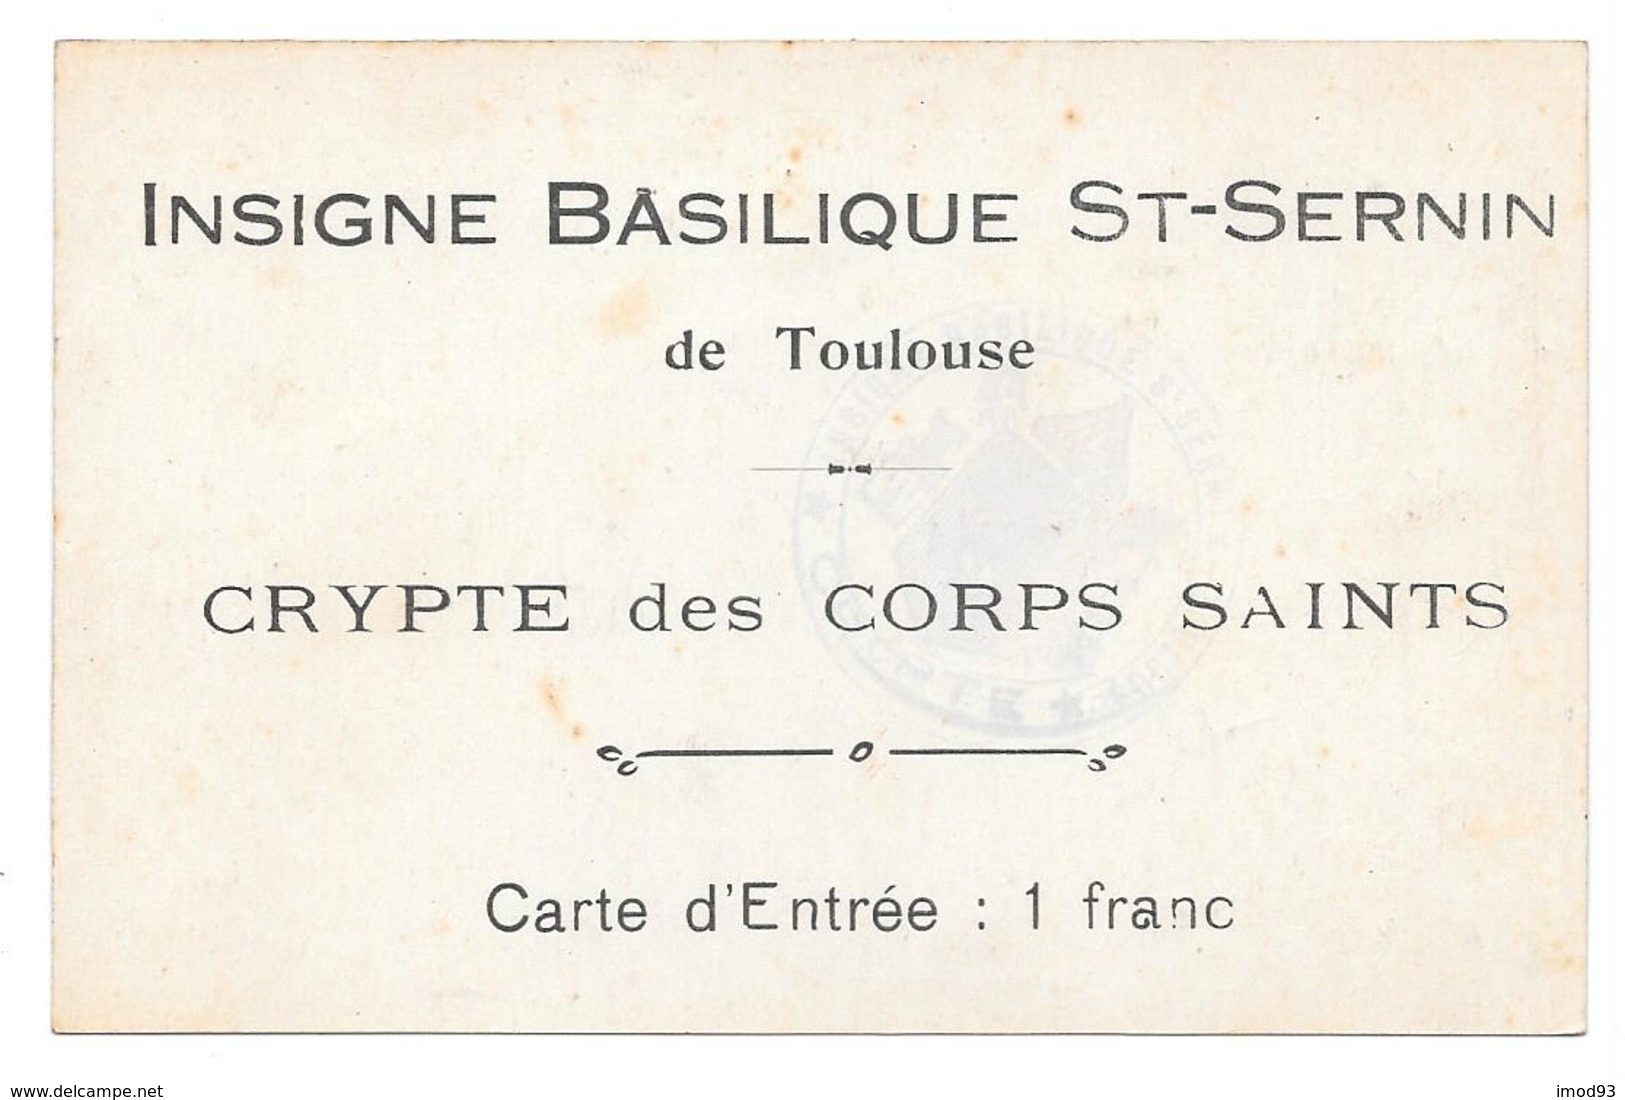 31 - INSIGNE BASILIQUE ST SERNIN De TOULOUSE - Carte D'Entrée CRYPTE Des CORPS SAINTS - Toulouse